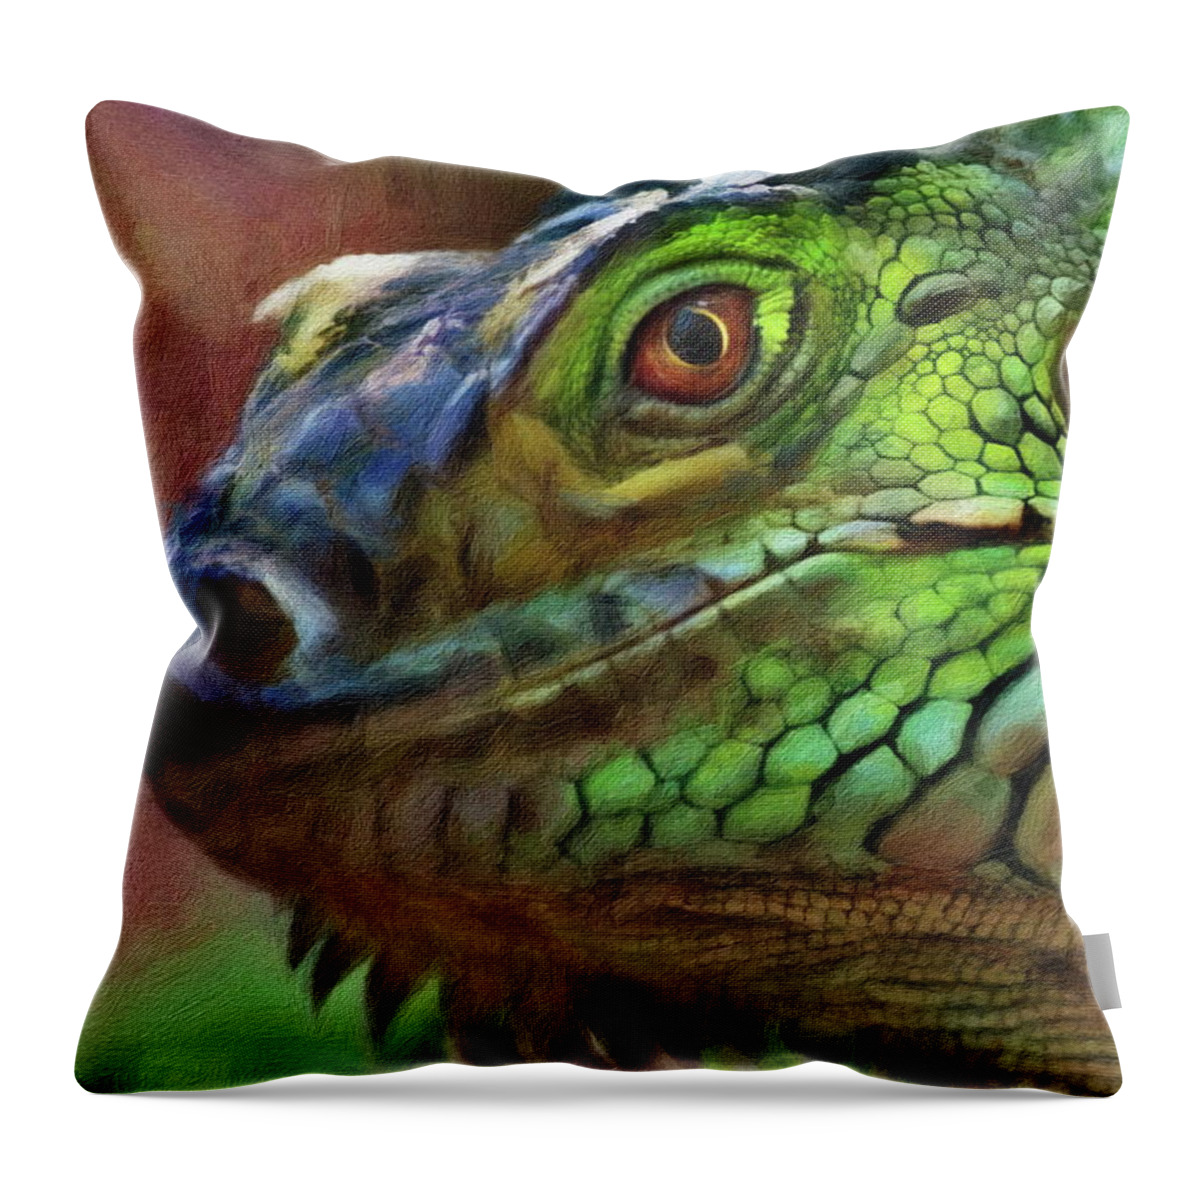 Lizard Throw Pillow featuring the digital art The Green Iguana by Russ Harris